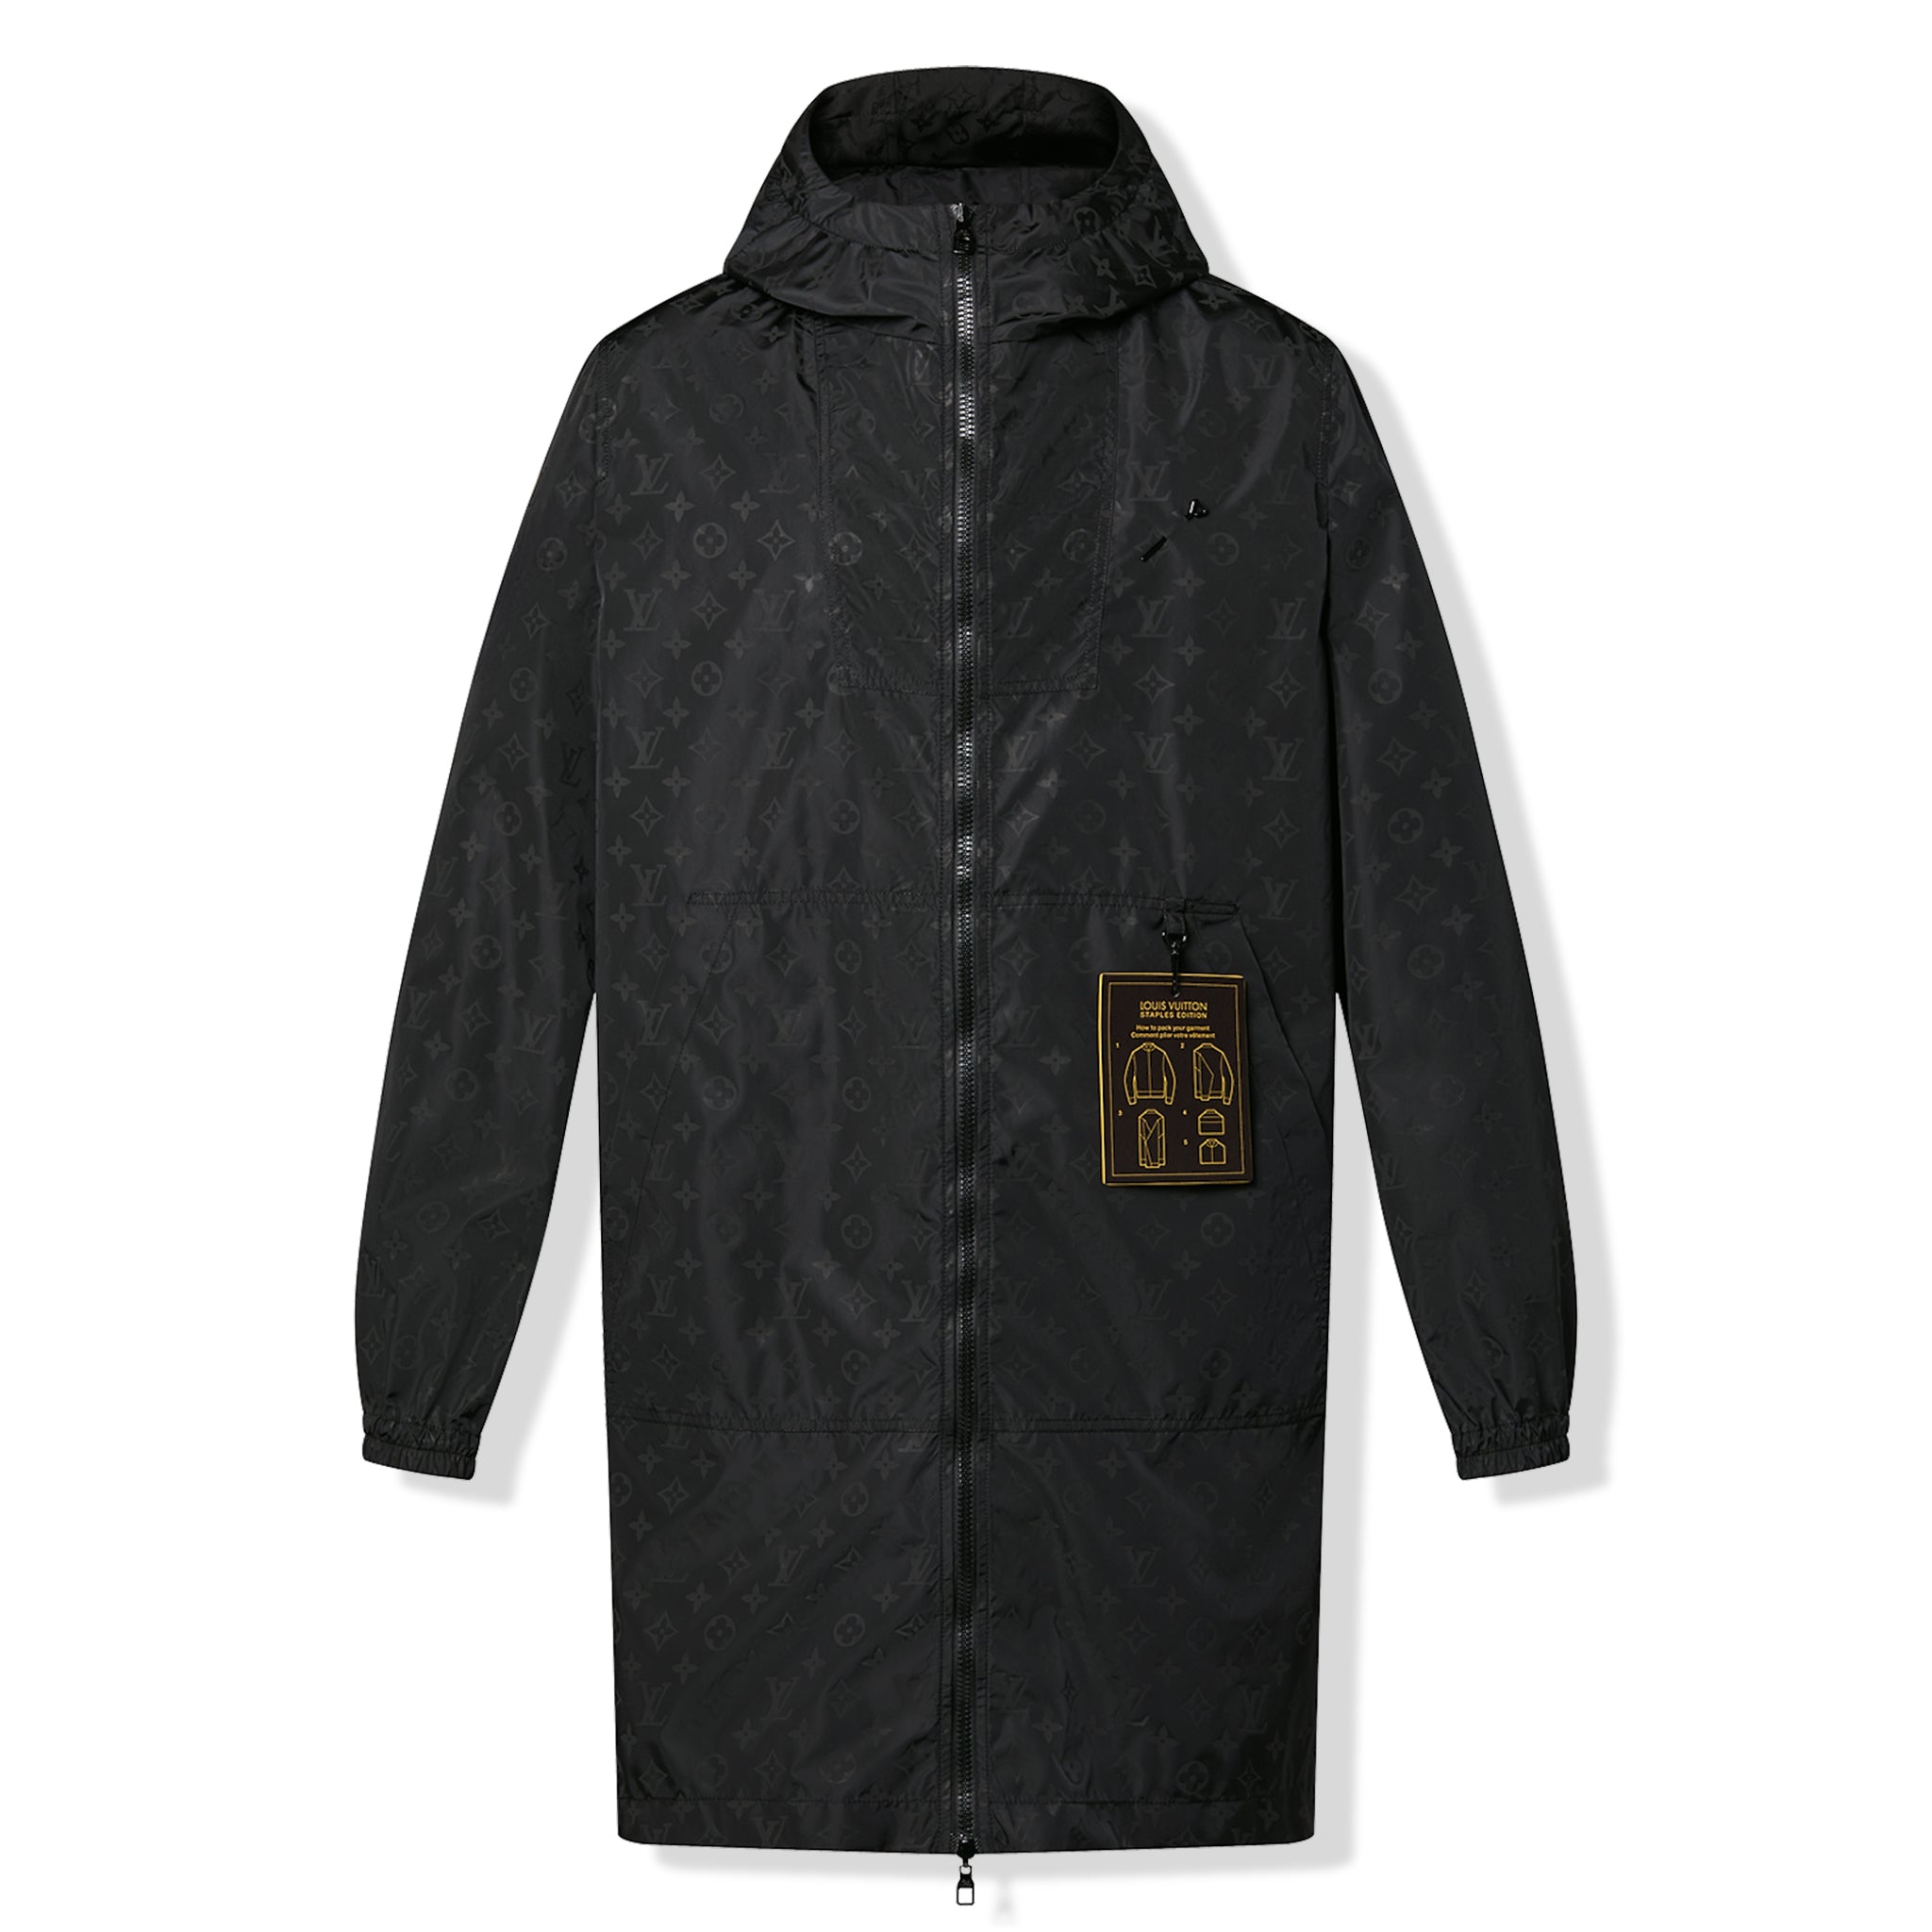 Louis Vuitton - Authenticated Jacket - Cotton Black for Men, Never Worn